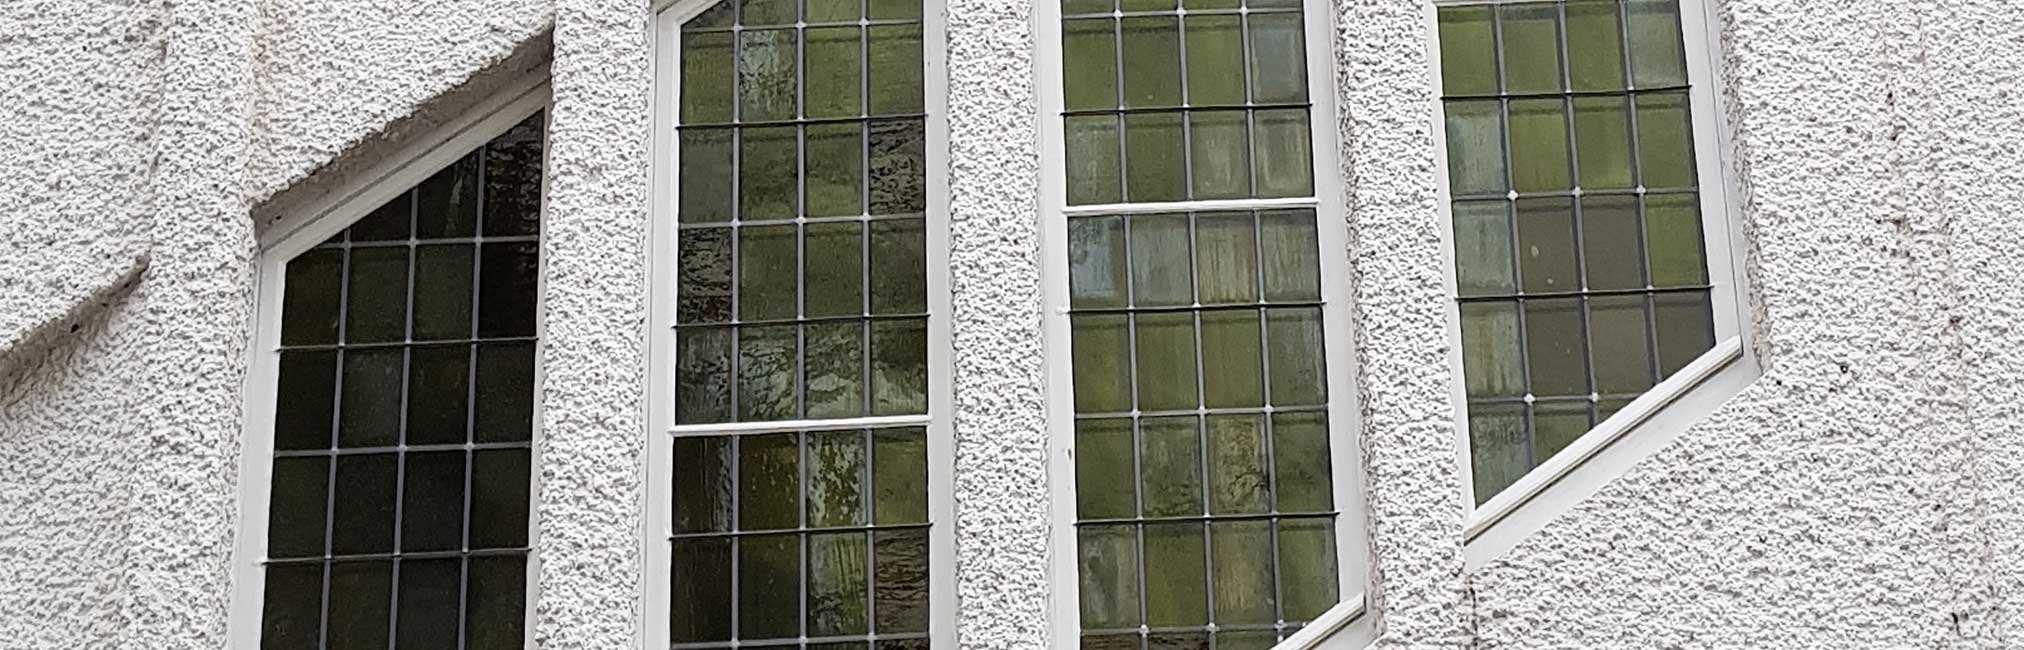 Glasfenster-Fassade